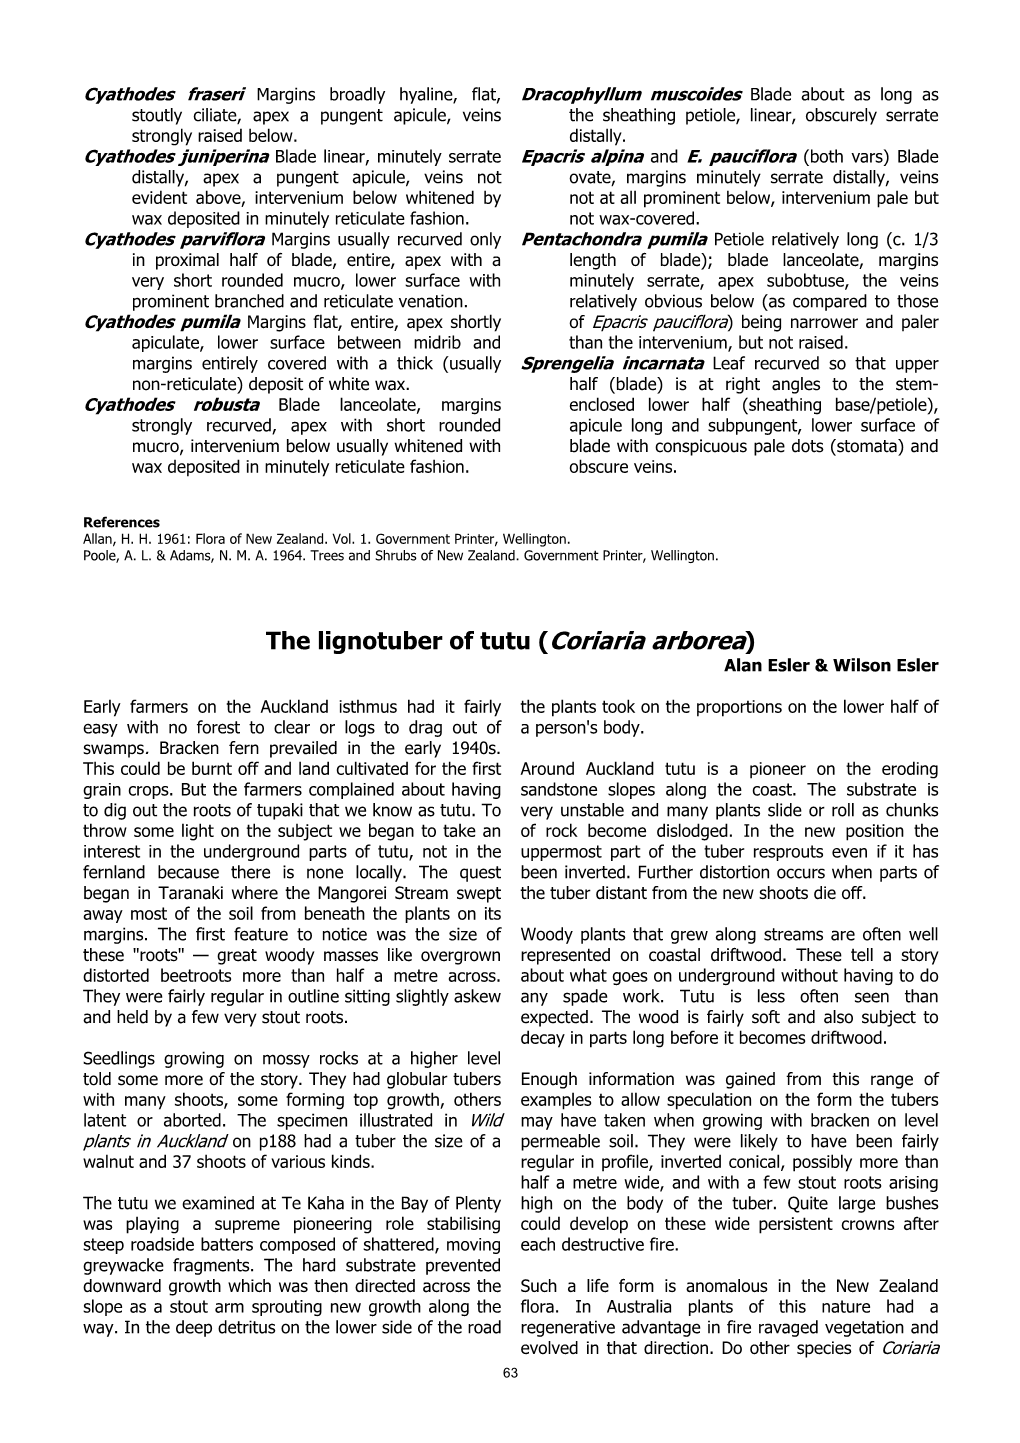 The Lignotuber of Tutu (Coriaria Arborea) Alan Esler & Wilson Esler